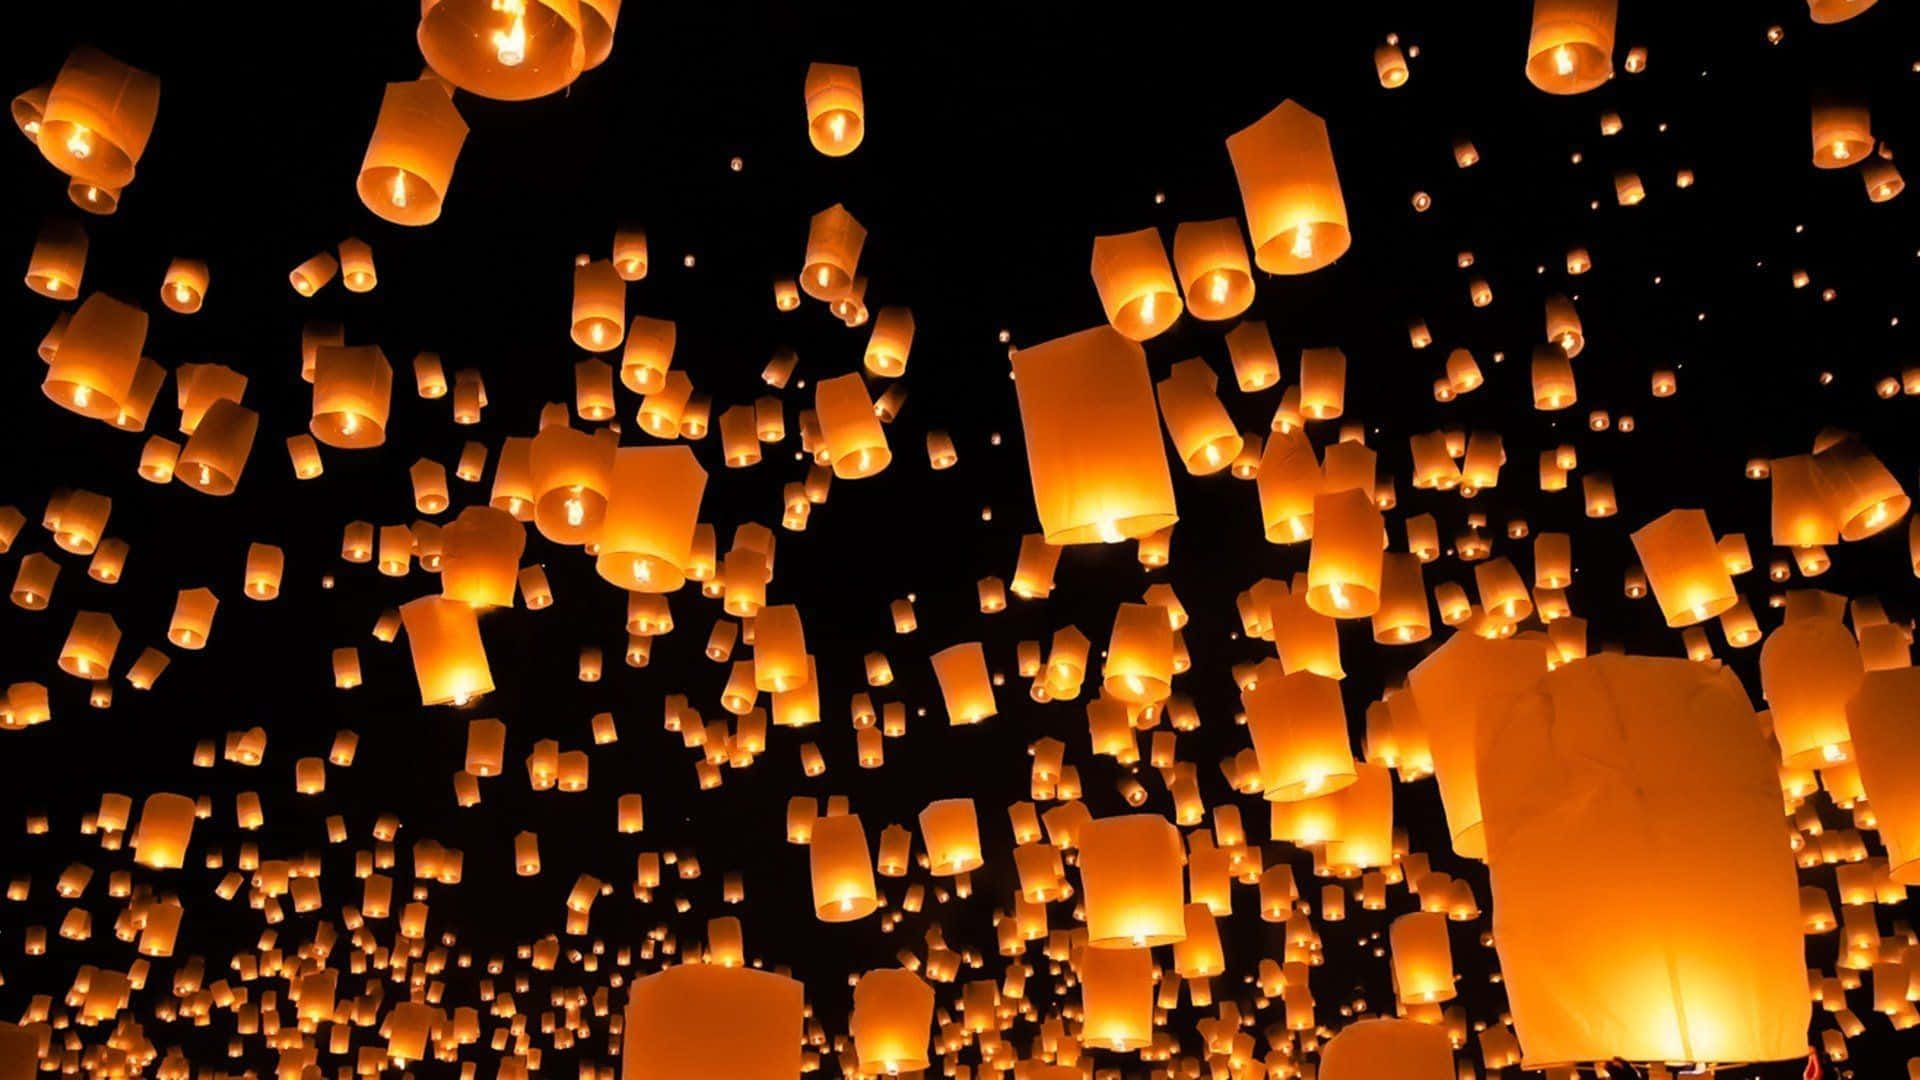 En gruppe lanterner svævende i luften